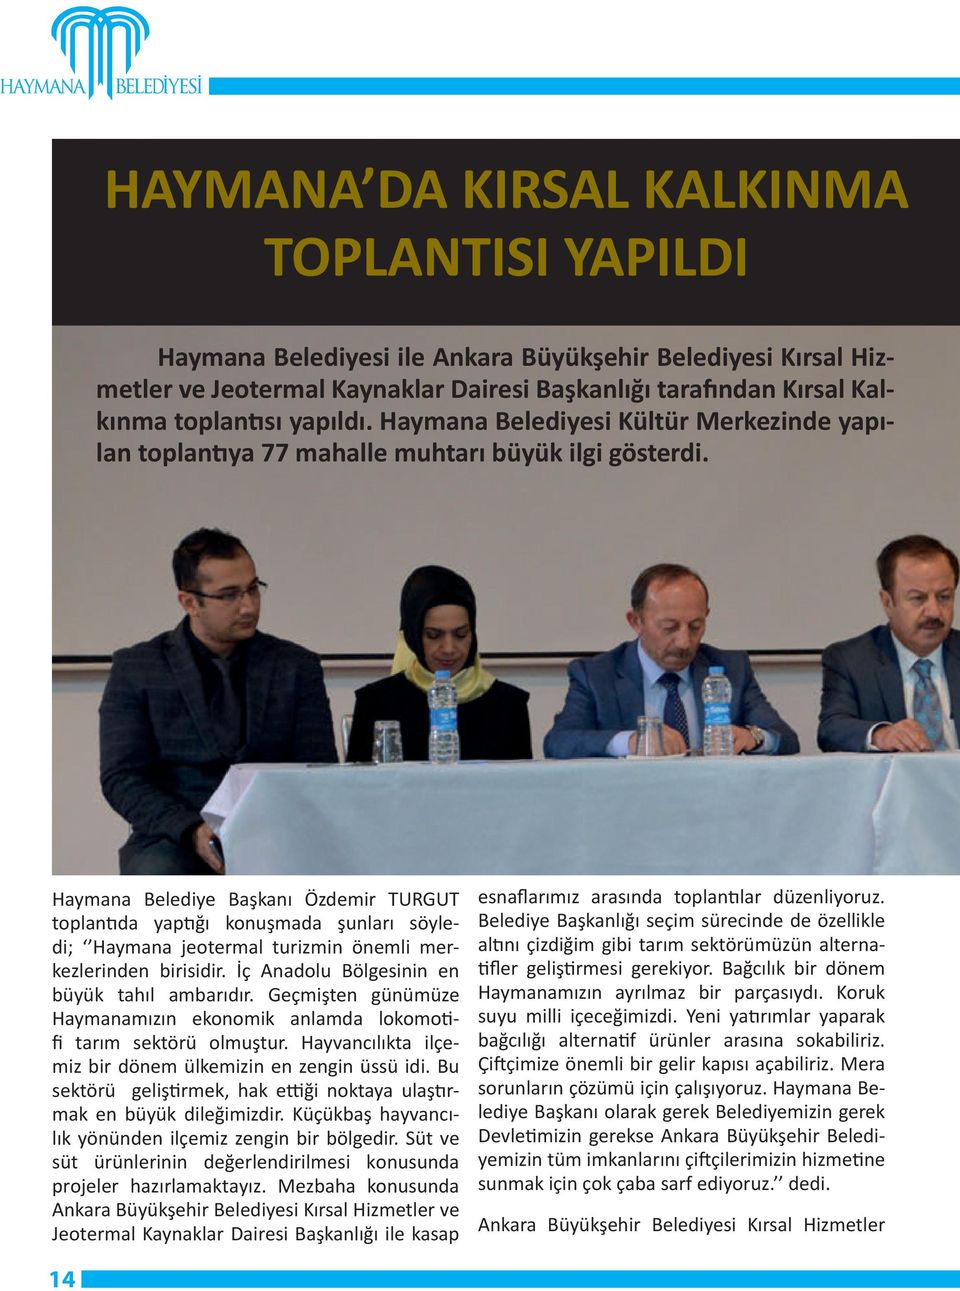 Haymana Belediye Başkanı Özdemir TURGUT toplantıda yaptığı konuşmada şunları söyledi; Haymana jeotermal turizmin önemli merkezlerinden birisidir. İç Anadolu Bölgesinin en büyük tahıl ambarıdır.